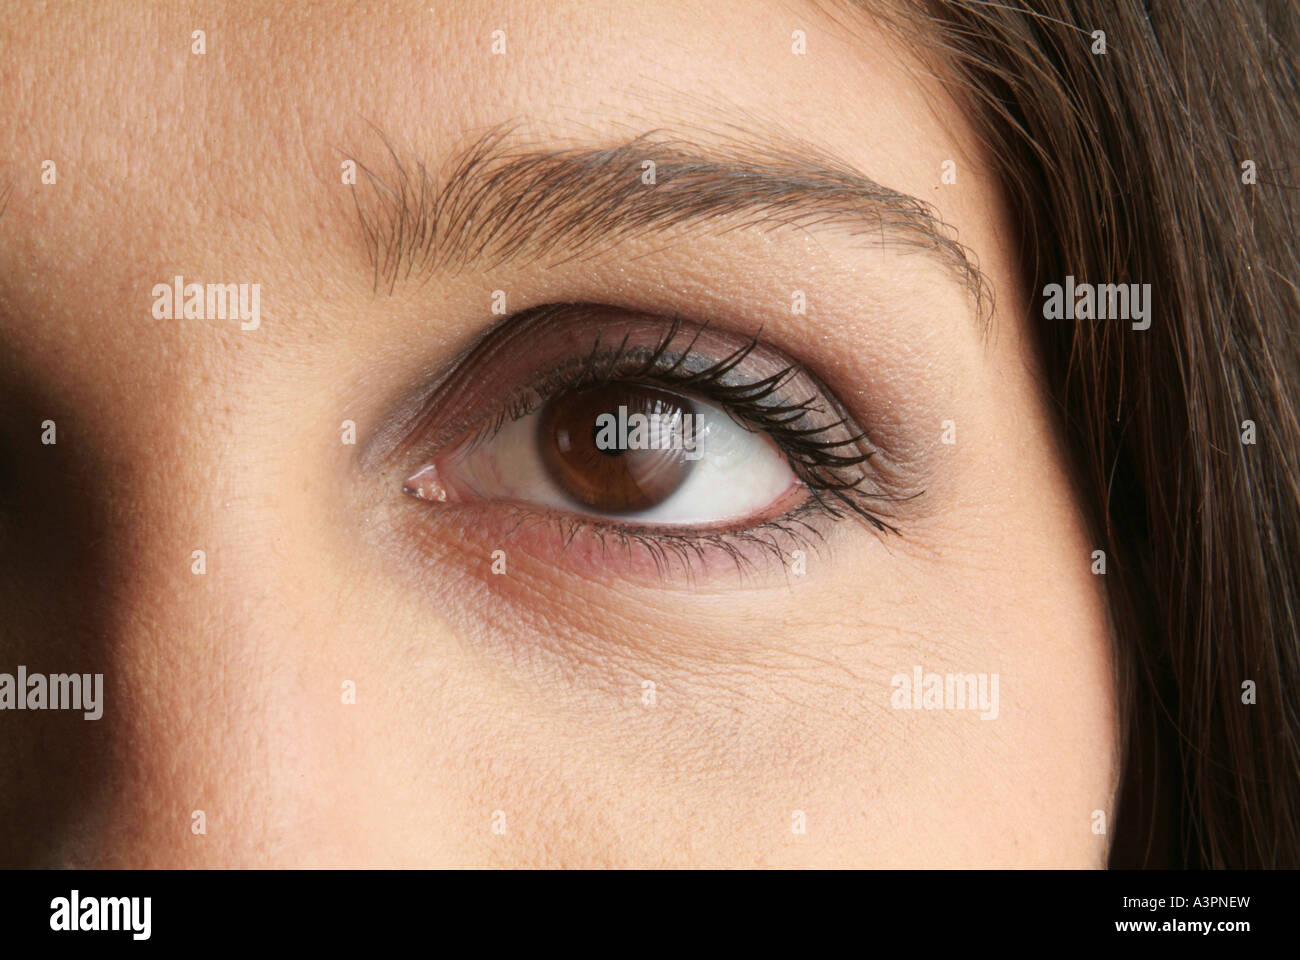 Eye of a woman Stock Photo